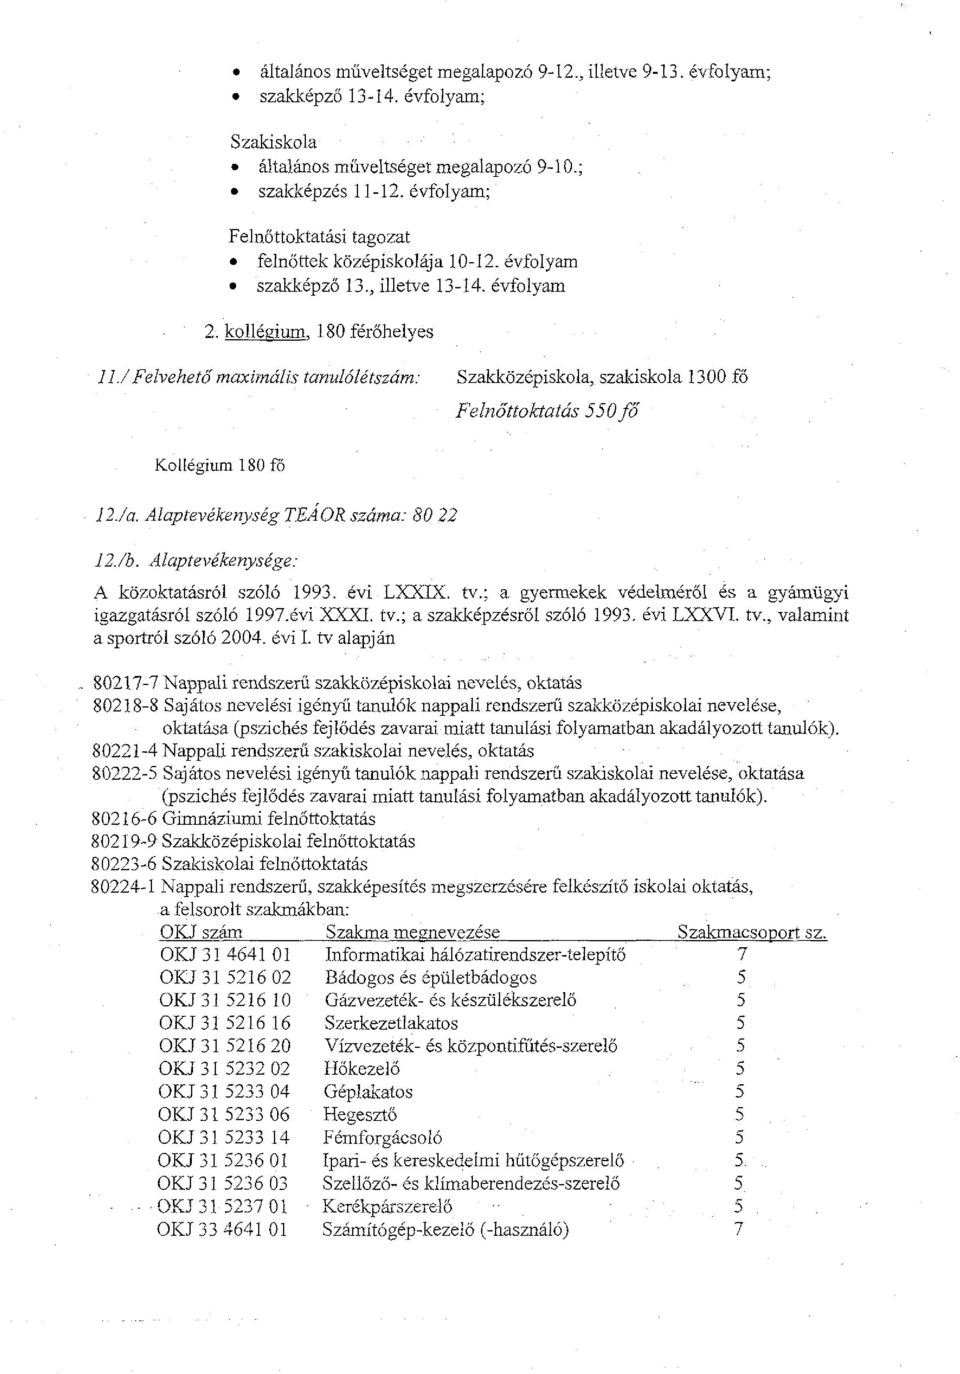 Szakkozipiskola, szakiskola 1300 fo Fe1no"toktatds 550 f6 Kollegium 180 f6 12./b. Aluptevikenysige: A kozoktatasr61 sz616 1993. evi LXXIX. tv.